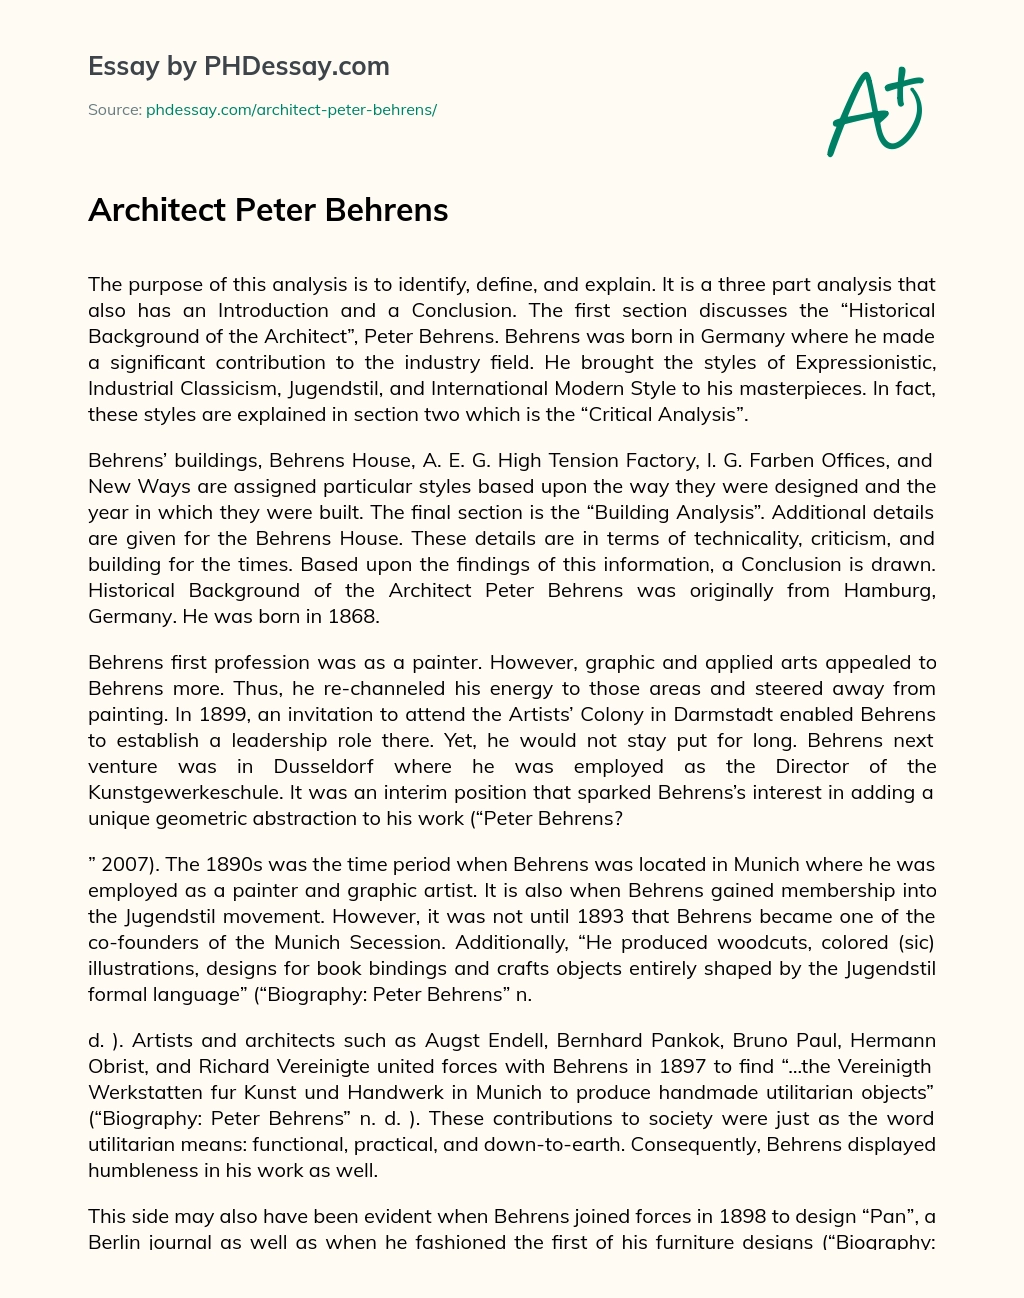 Architect Peter Behrens essay